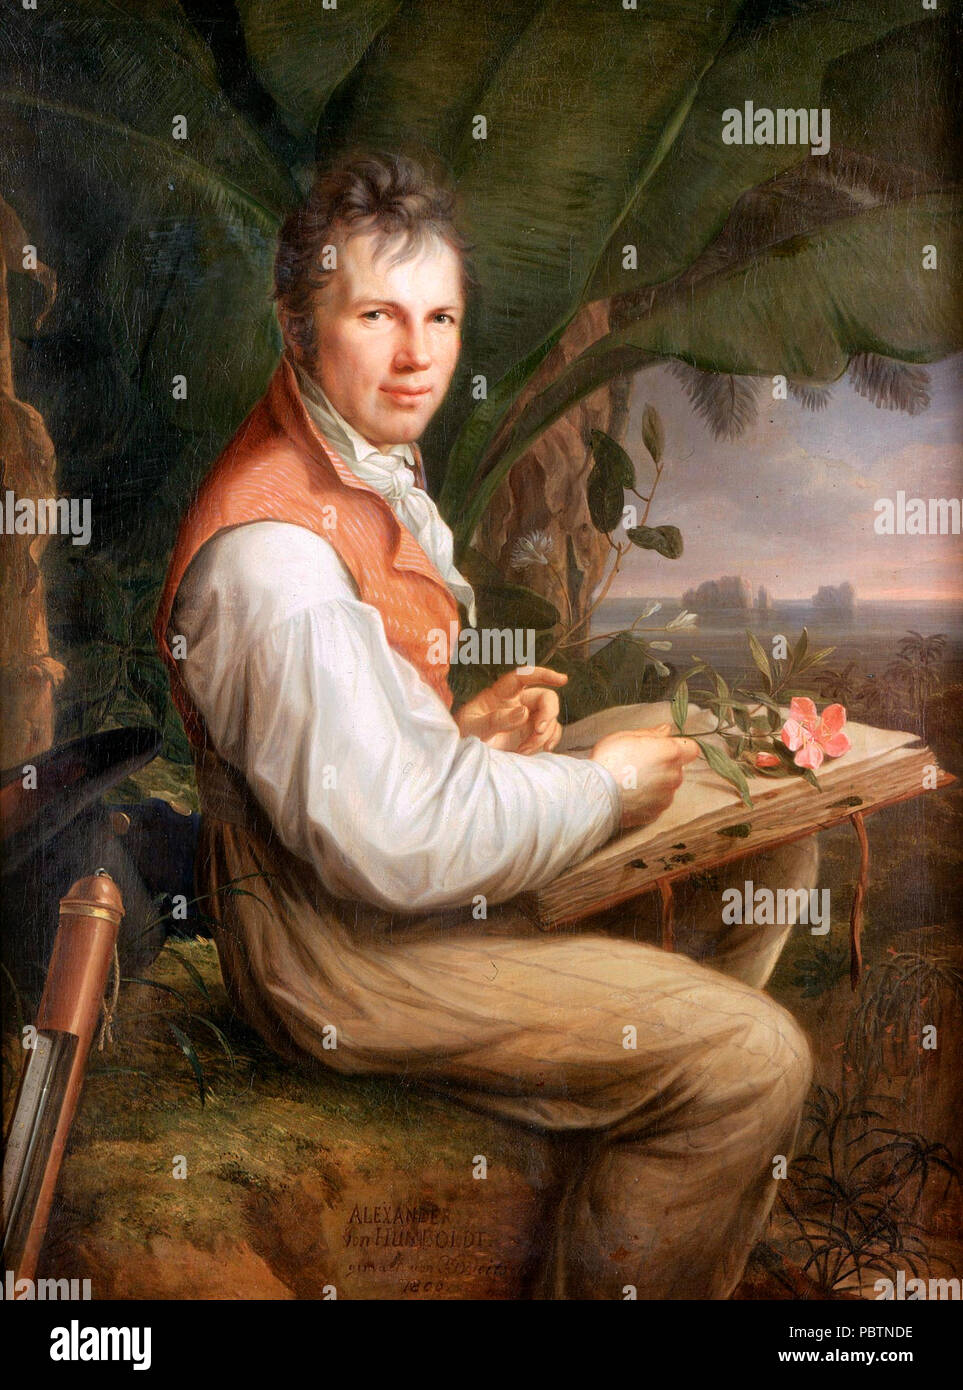 Ritratto di Alexander von Humboldt - esploratore tedesco Alexander von Humboldt ha mostrato il suo disgusto per la schiavitù e spesso criticato le politiche coloniali che egli ha sempre agito al di fuori di un profonda convinzione umanistica, sostenuti dalle idee dell'Illuminismo. Friedrich Georg Weitsch, 1806 Foto Stock